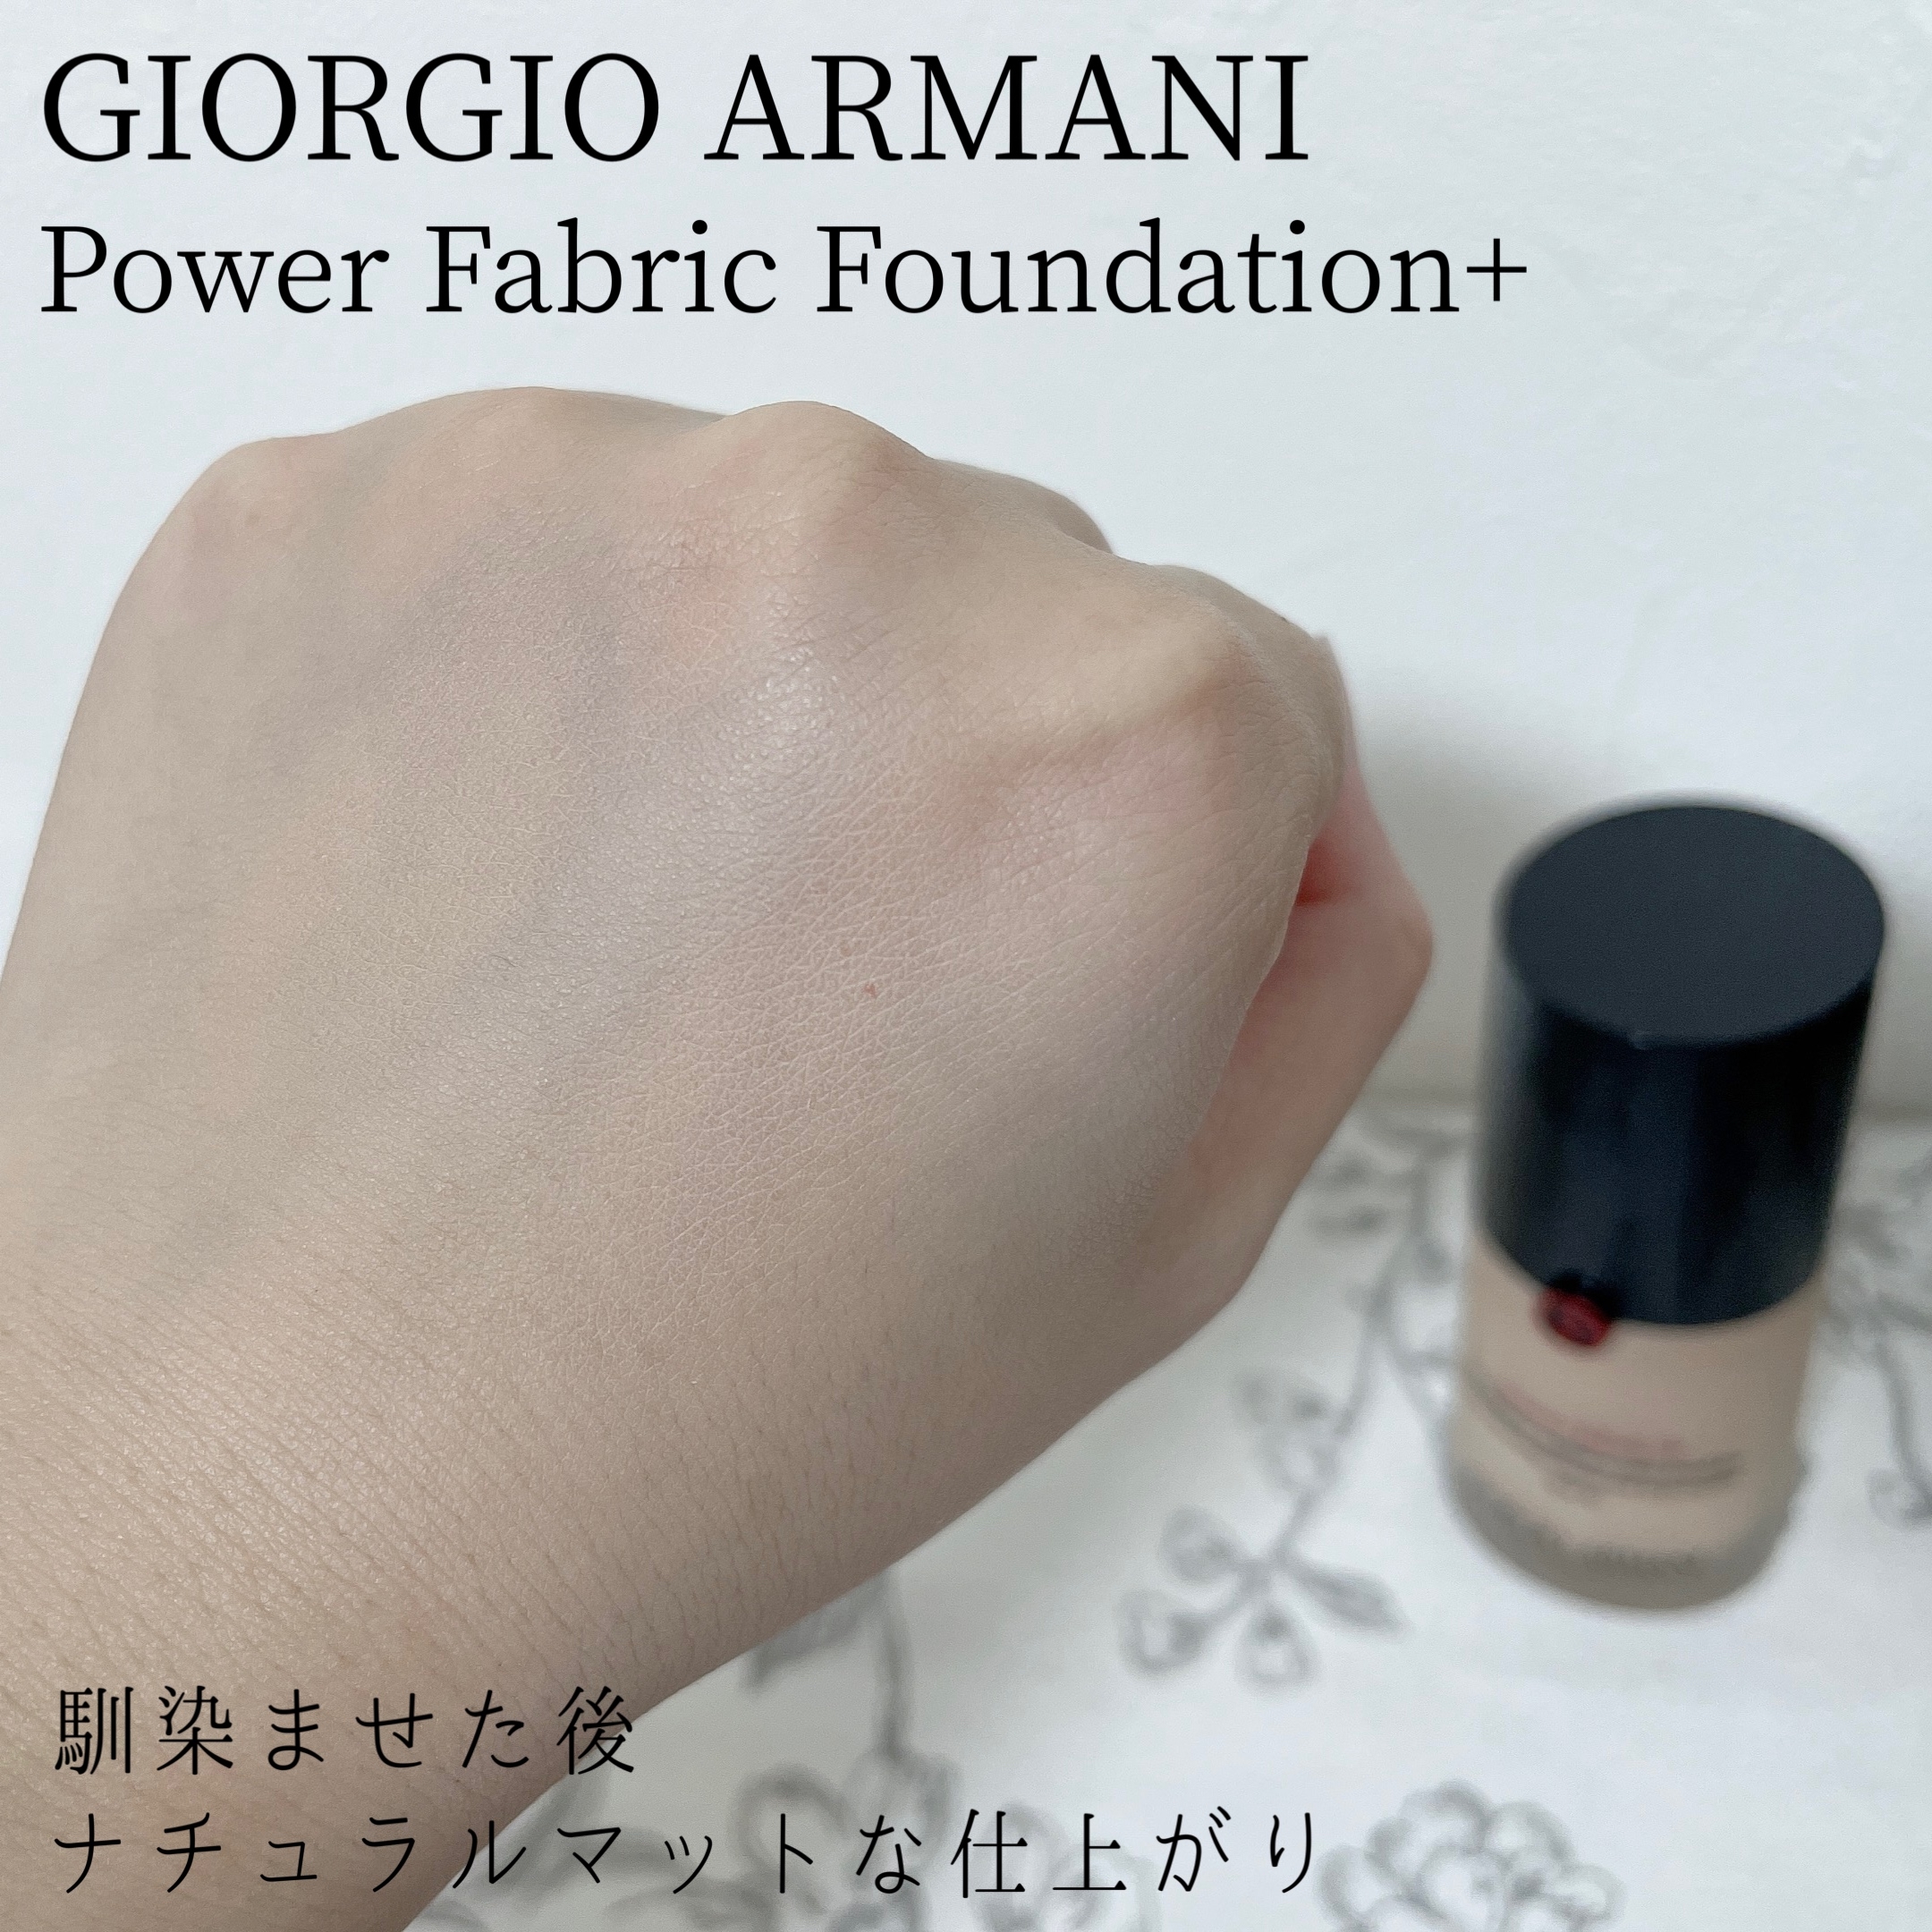 GIORGIO ARMANI BEAUTY(ジョルジオ アルマーニ ビューティ) パワー ファブリック ファンデーション +の良い点・メリットに関するもいさんの口コミ画像3